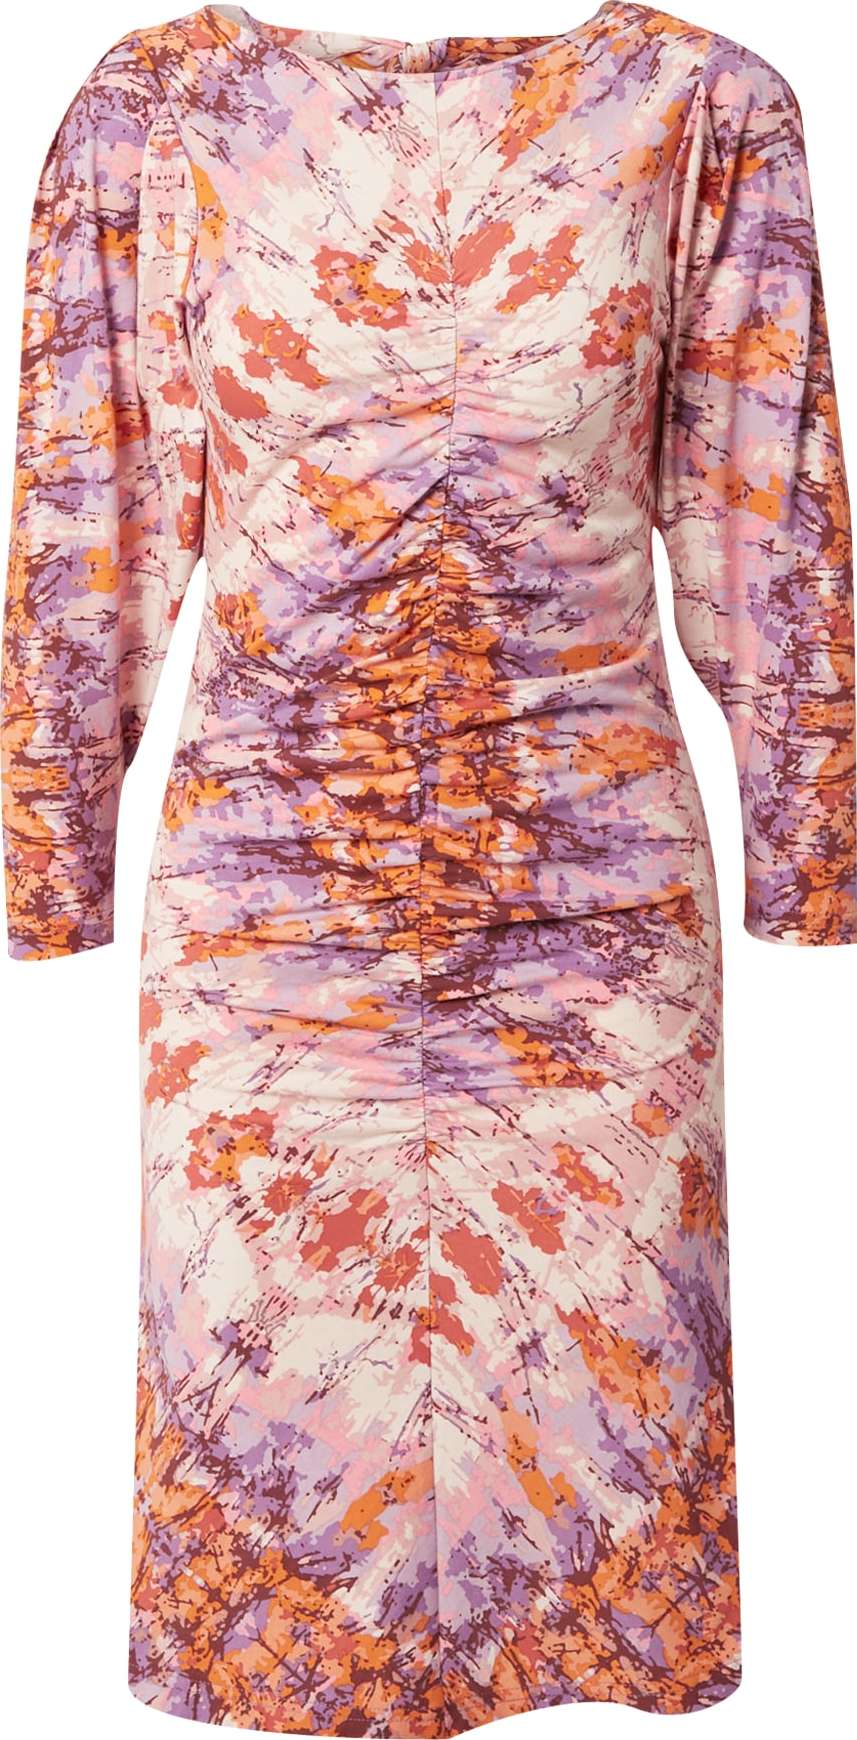 Hofmann Copenhagen Šaty 'Erica' fialová / oranžová / růžová / bílá